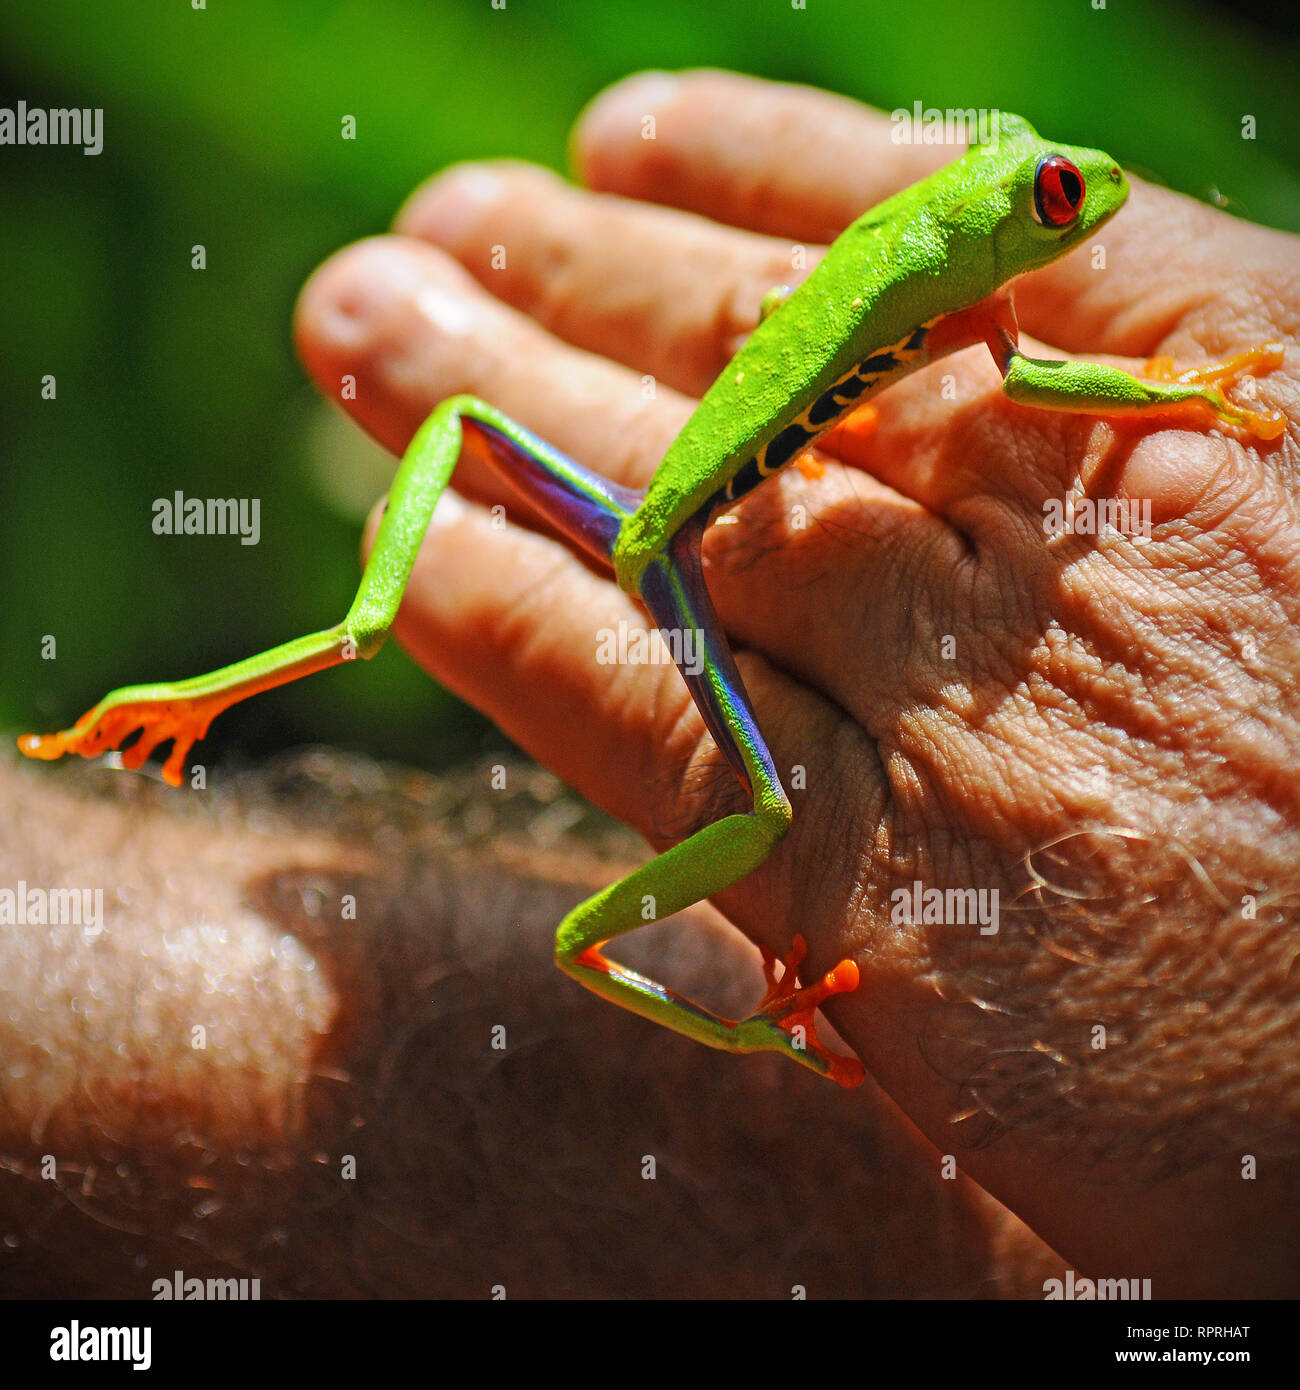 Une grenouille arboricole aux yeux rouges criardes ou grenouille feuille (agalychnis callidryas) sur une main humaine à l'intérieur du parc national de Tortuguero, Costa Rica. Banque D'Images